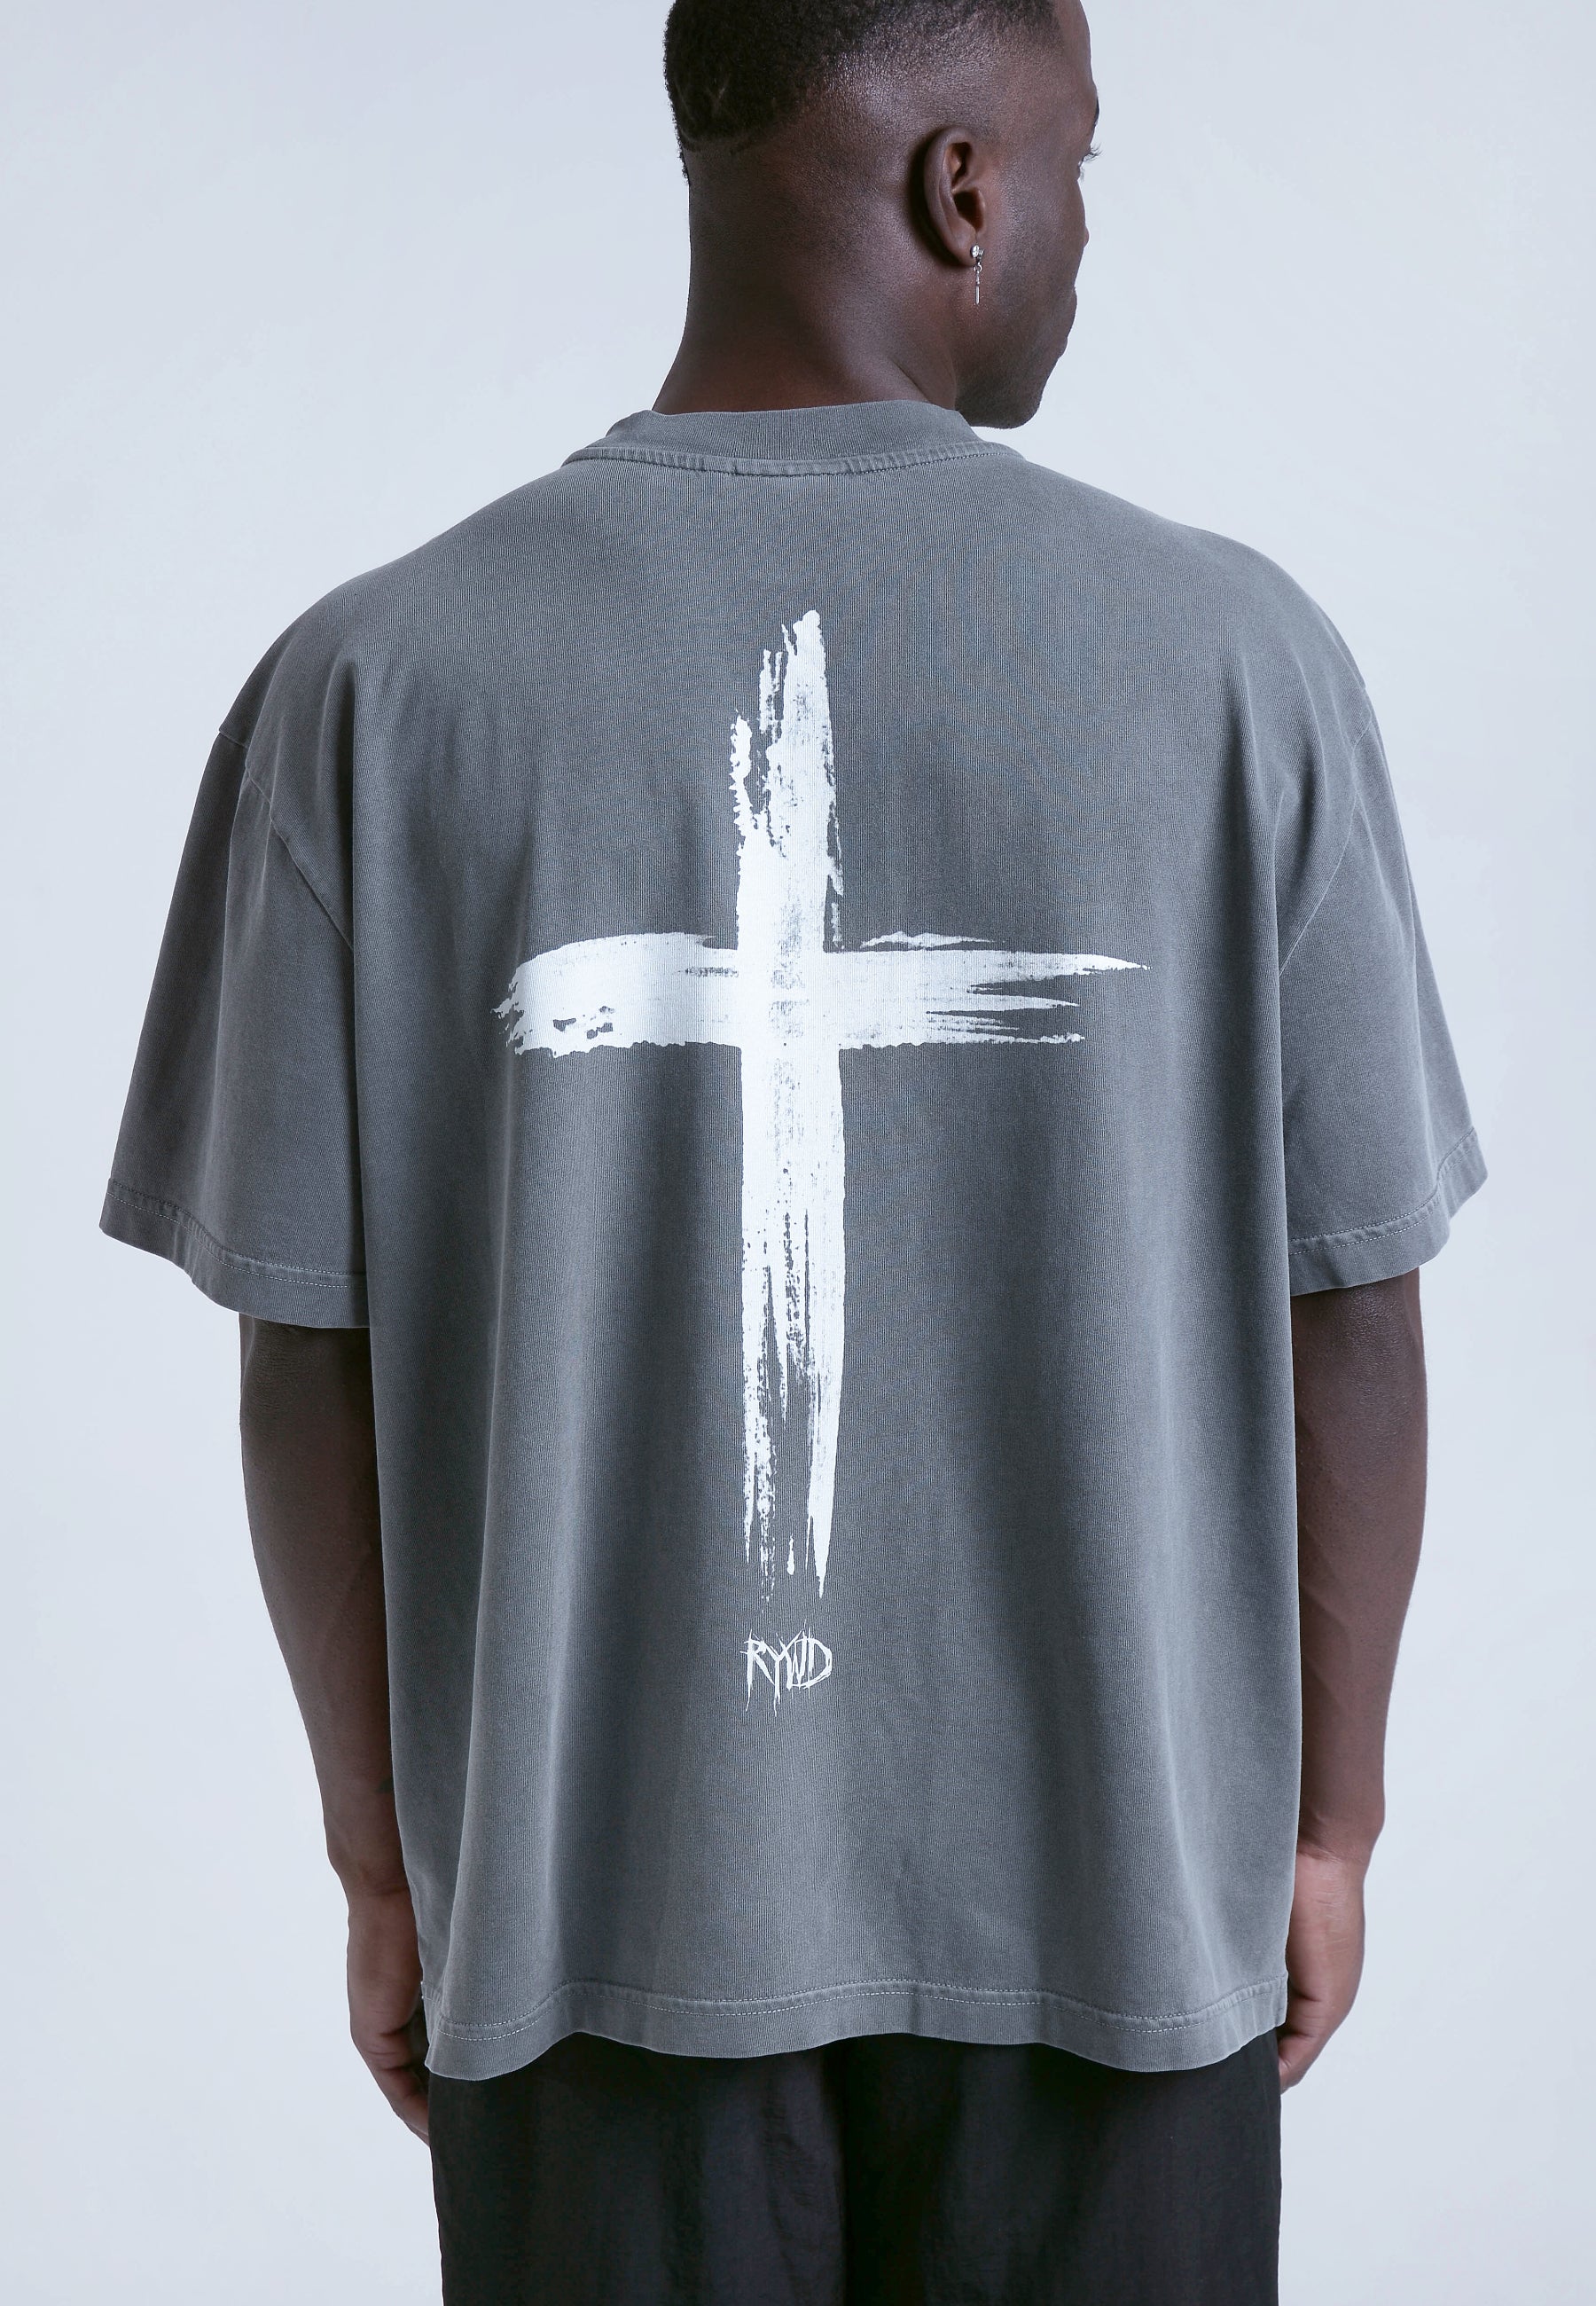 RYWD Cross T-Shirt grau 2 unisex oversize streetwear